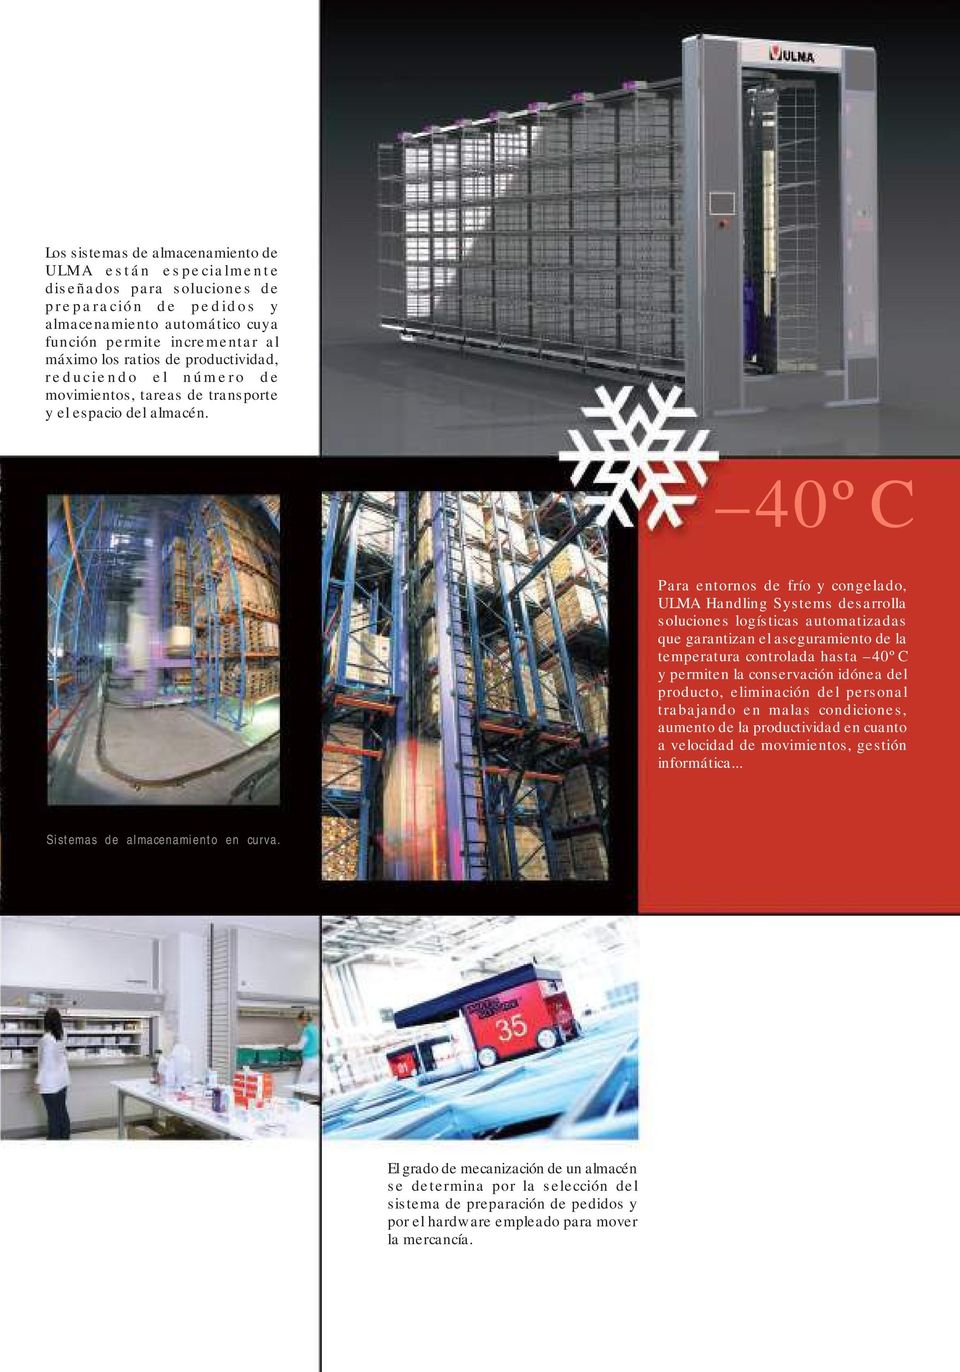 40ºC Para entornos de frío y congelado, ULMA Handling Systems desarrolla soluciones logísticas automatizadas que garantizan el aseguramiento de la temperatura controlada hasta 40ºC y permiten la